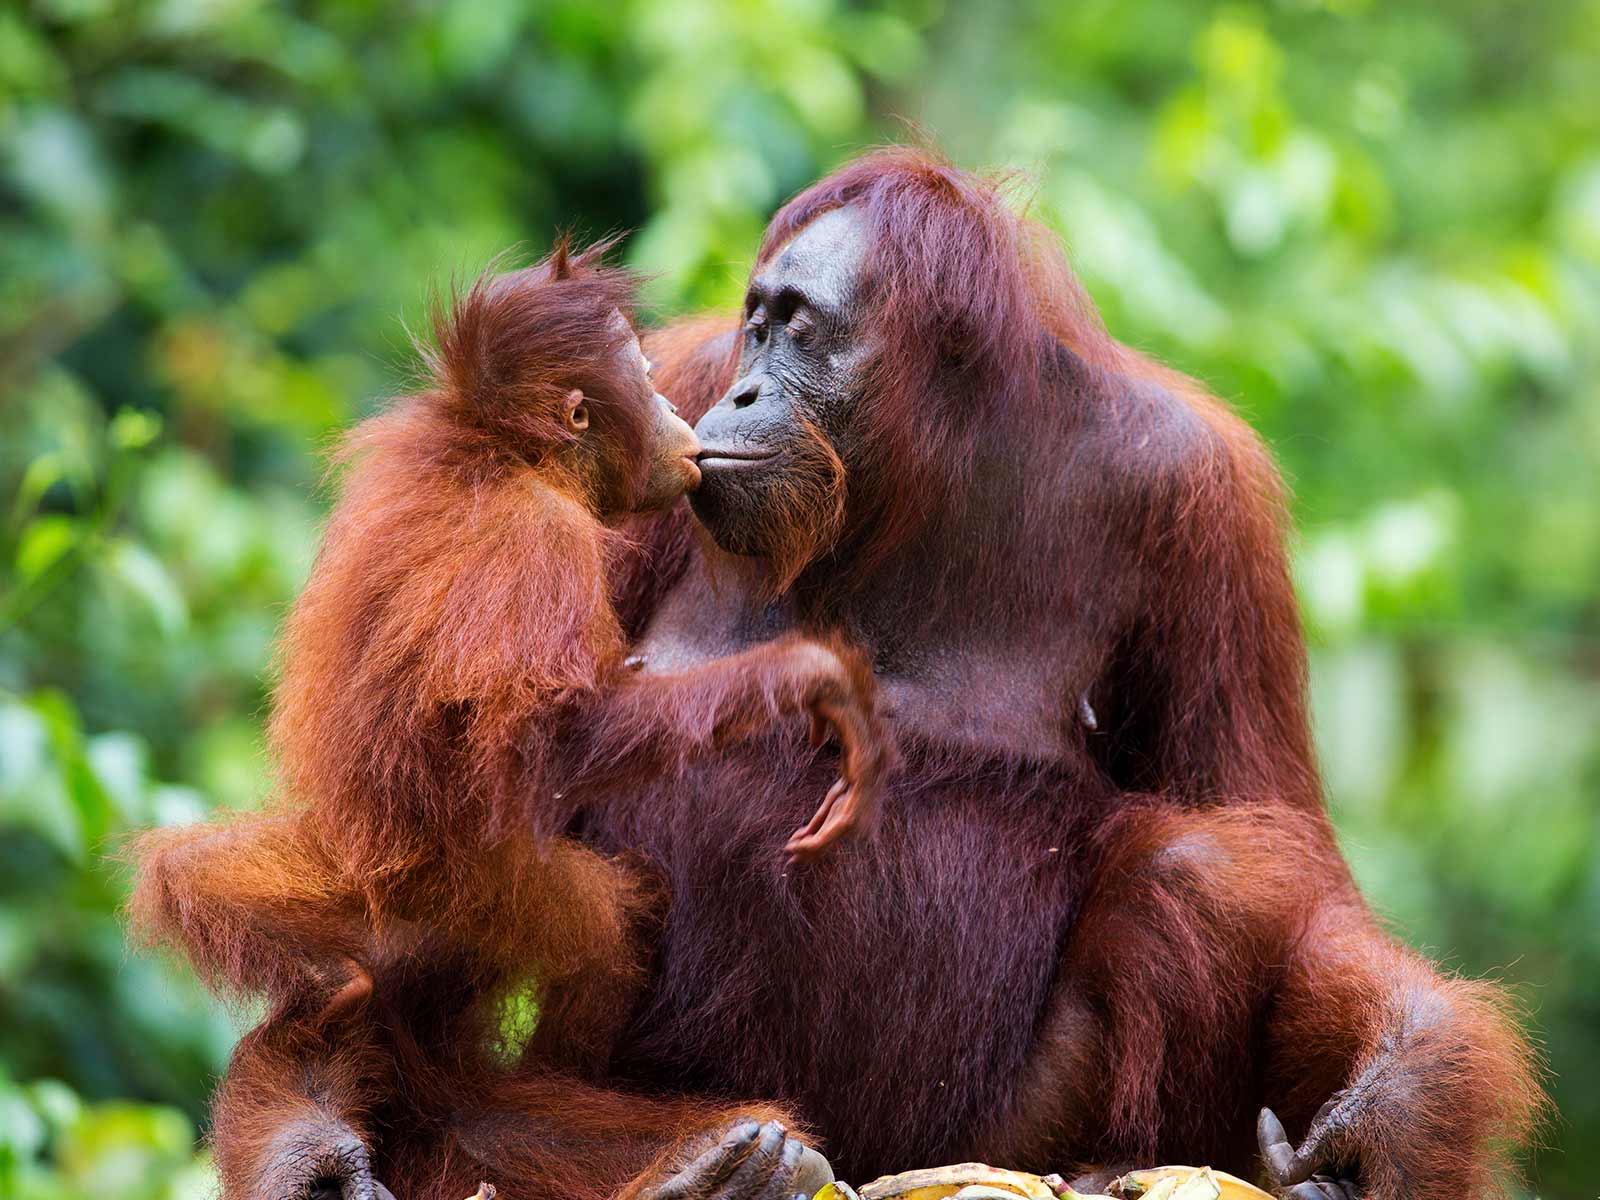 Parent and child orangutans